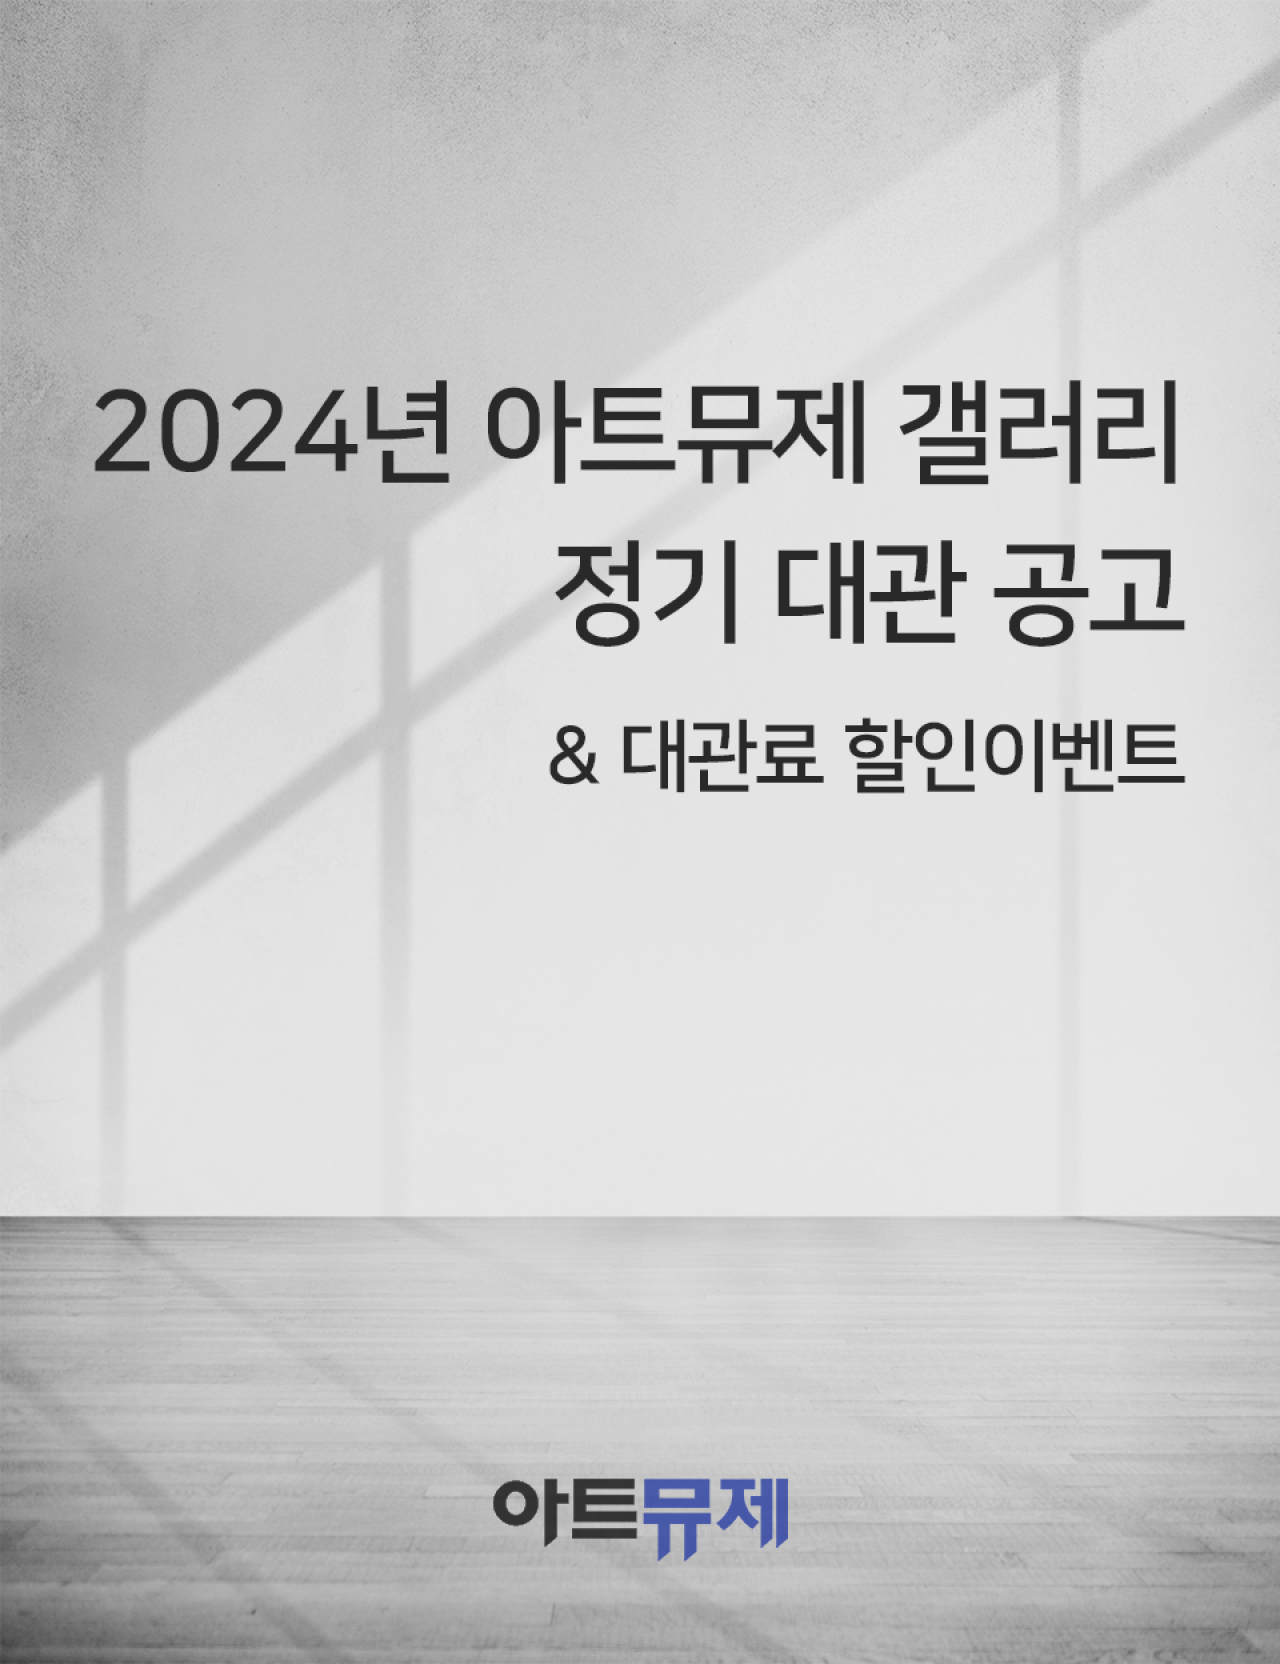 2024 아트뮤제갤러리 정기 대관 공고